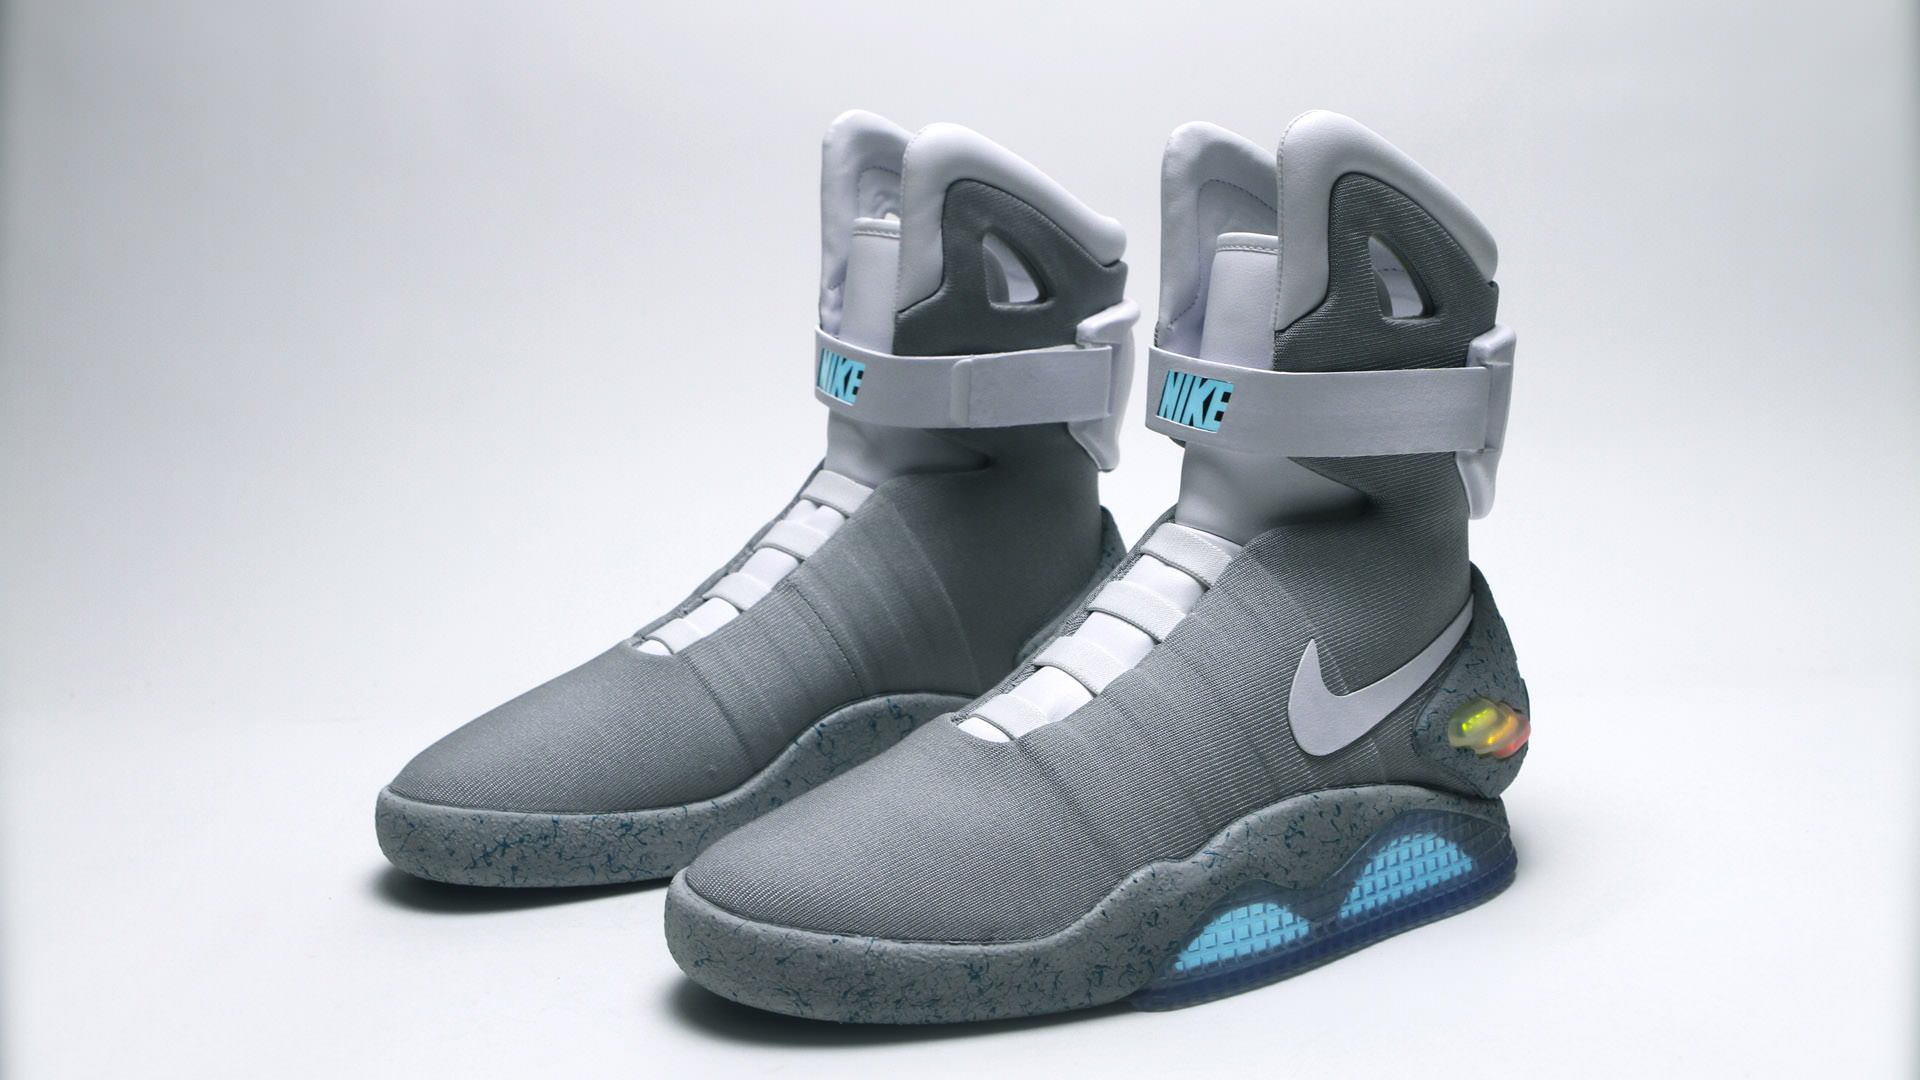 Retour vers le futur : Nike va sortir les chaussures de Marty Mcfly à laçage automatique! | Geeks Com'